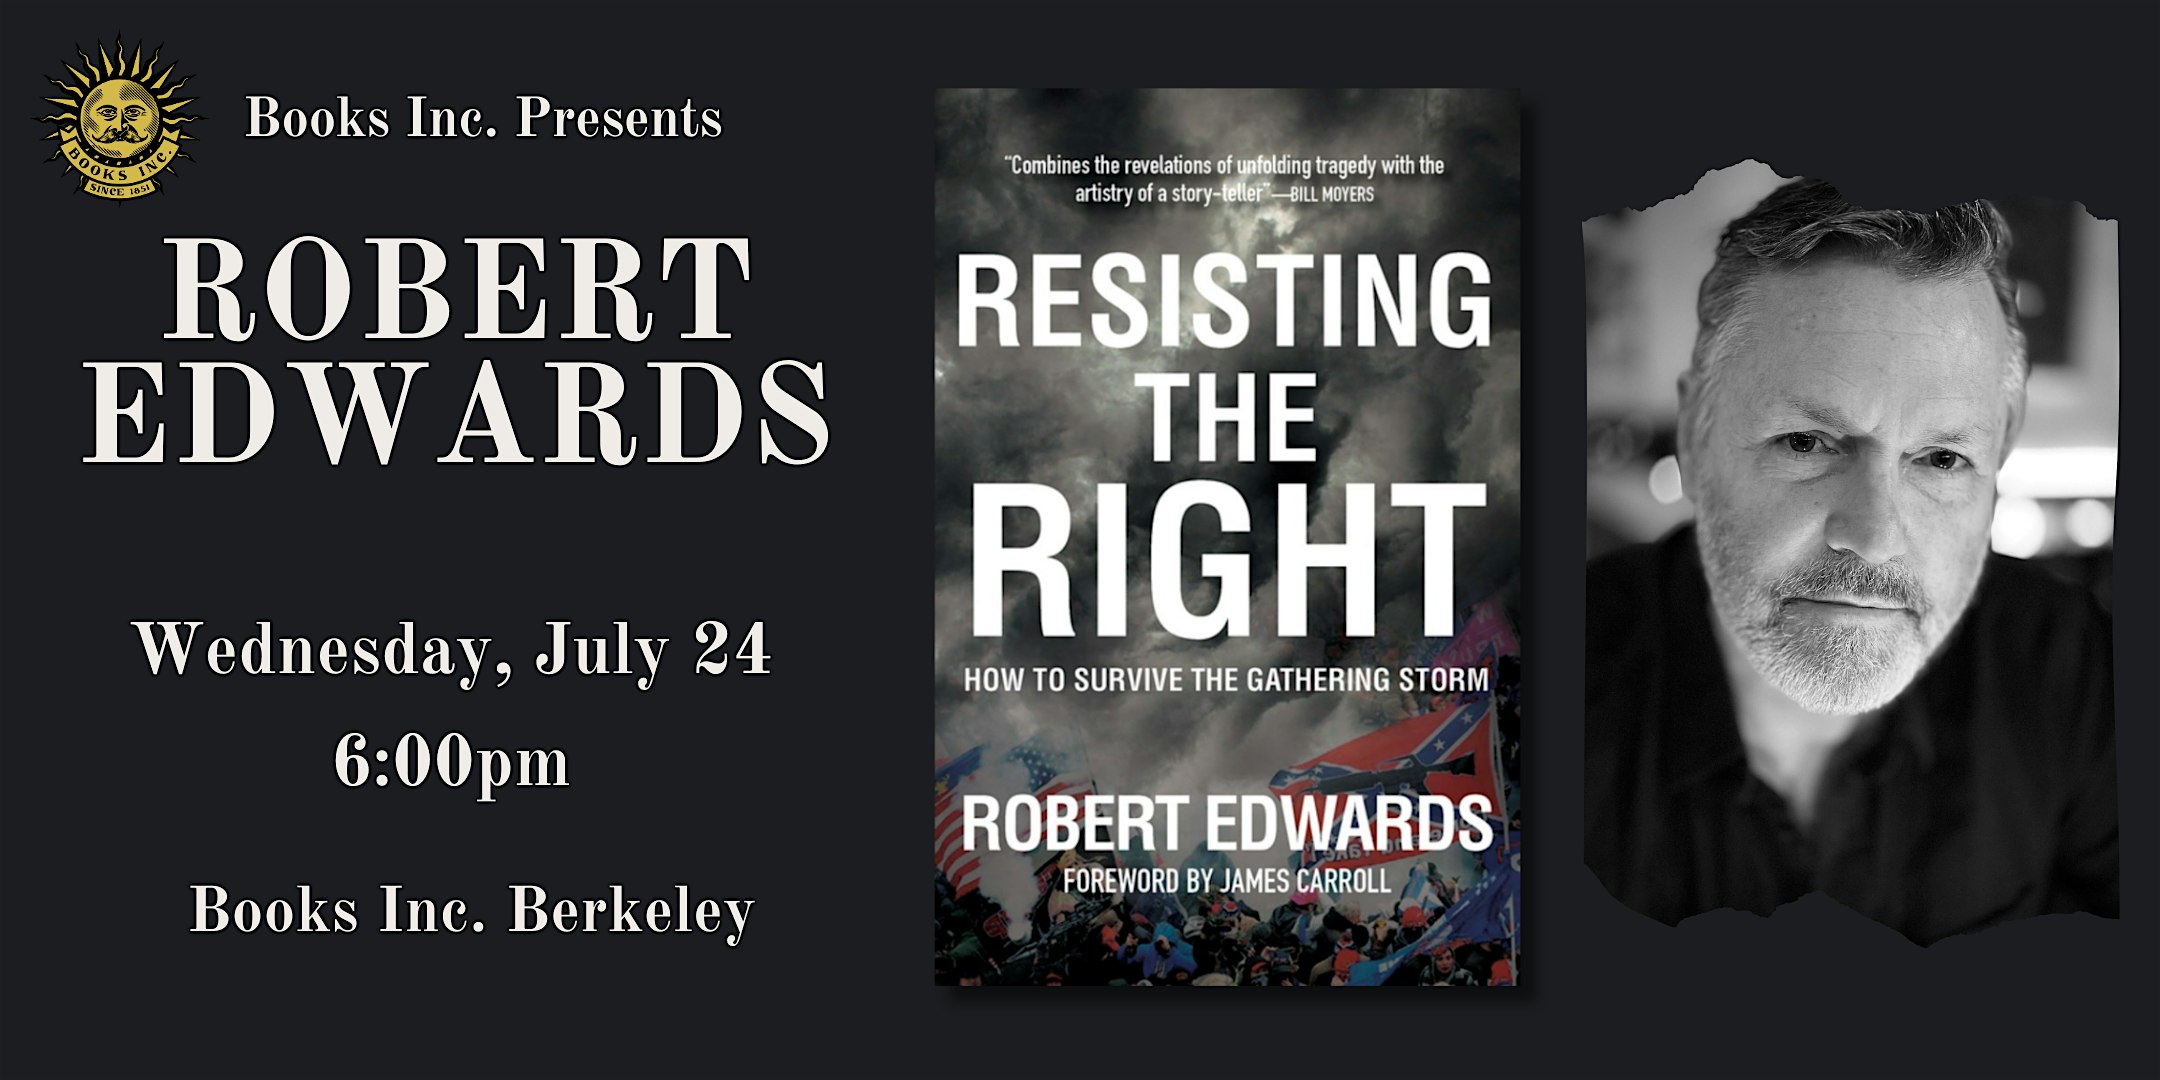 ROBERT EDWARDS at Books Inc. Berkeley